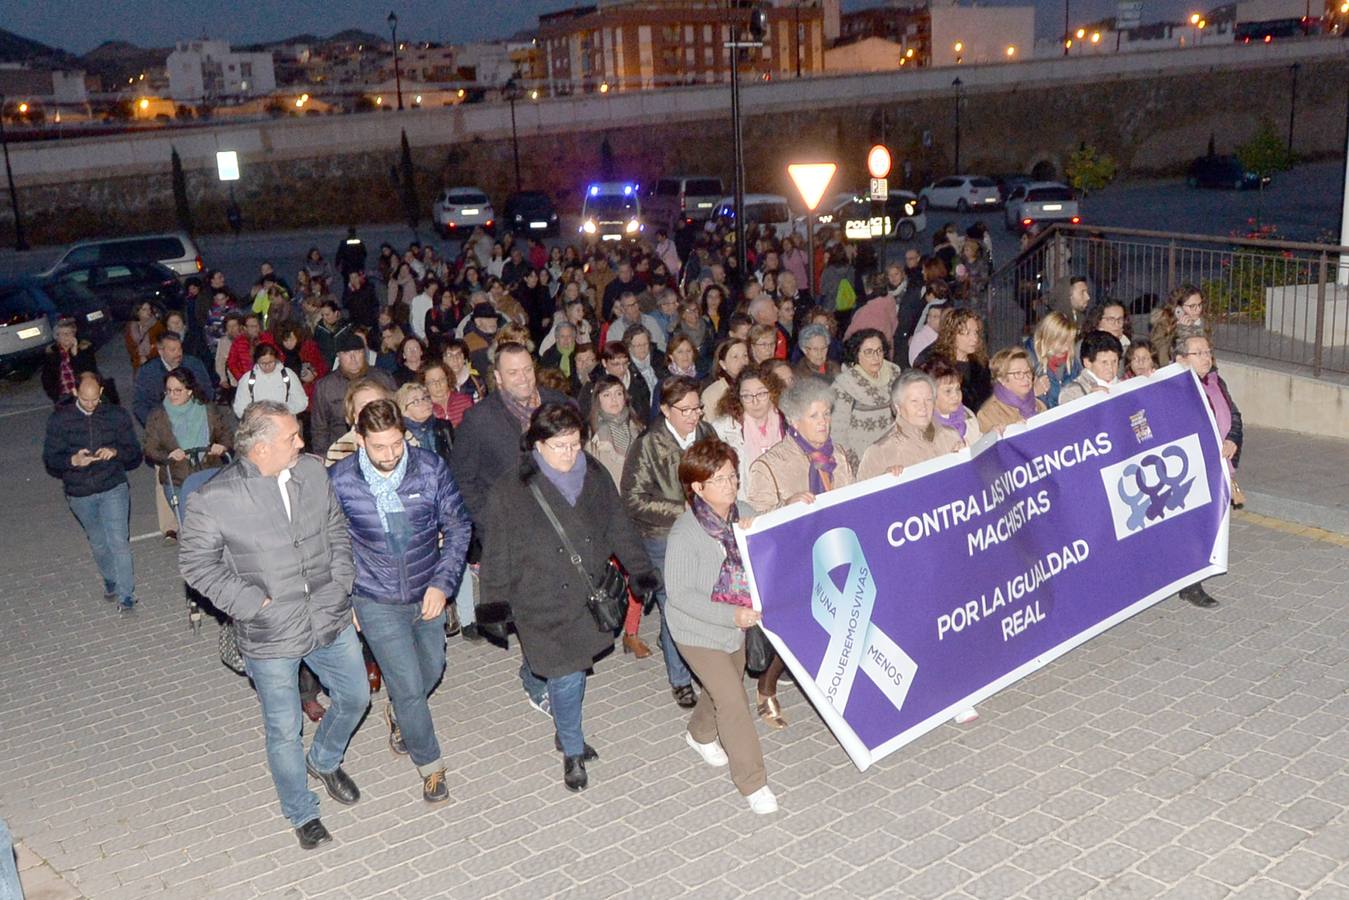 La marcha fue organizada por el Ayuntamiento y la Federación de Organizaciones de Mujeres de Lorca solo unas horas antes. A través de las redes sociales logró duplicar la presencia de asistentes mientras se llevaba a cabo